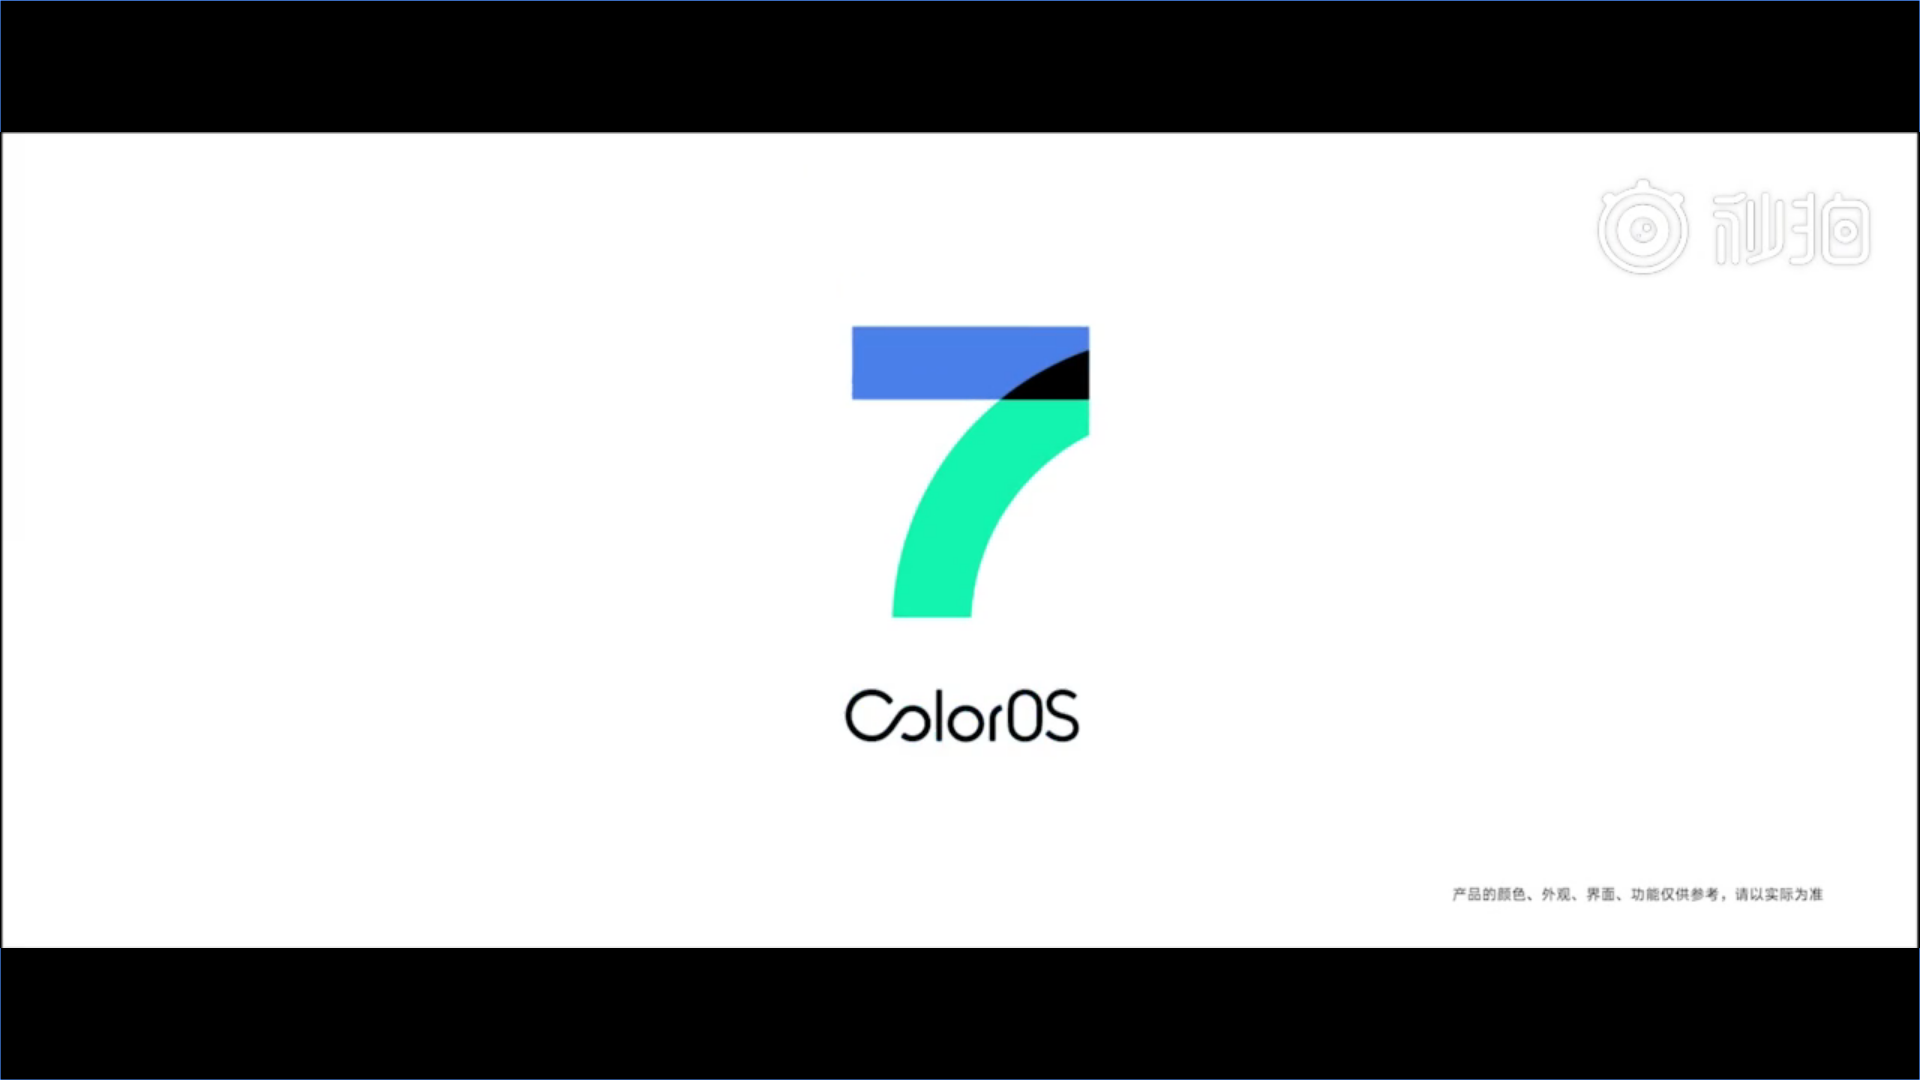 OPPO giới thiệu ColorOS 7 và nhá hàng nhẹ Reno 3